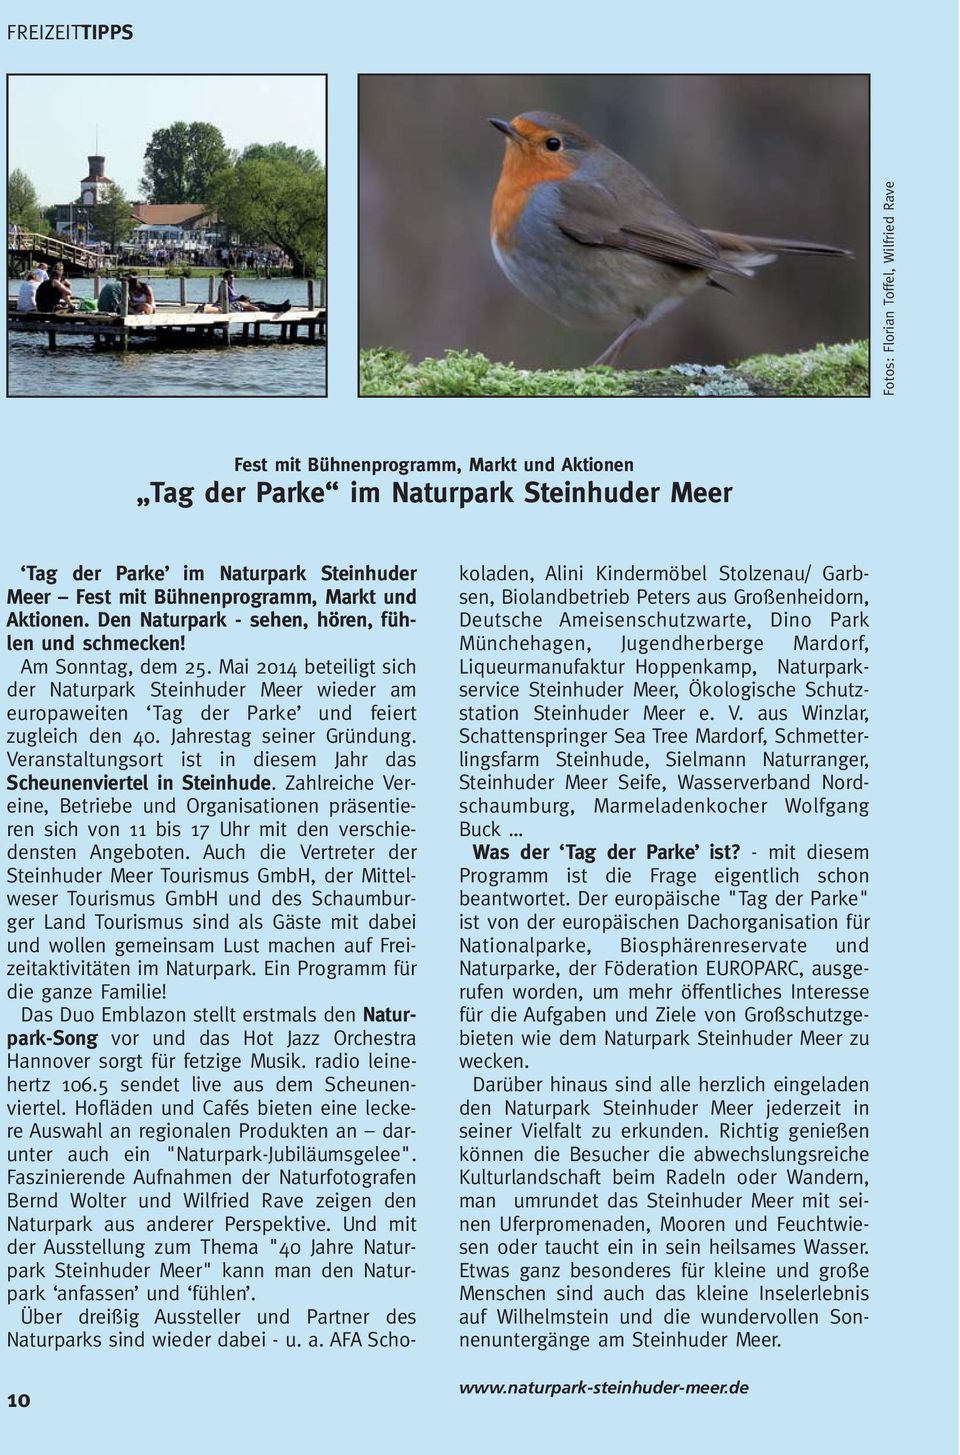 Mai 2014 beteiligt sich der Naturpark Steinhuder Meer wieder am europaweiten Tag der Parke und feiert zugleich den 40. Jahrestag seiner Gründung.